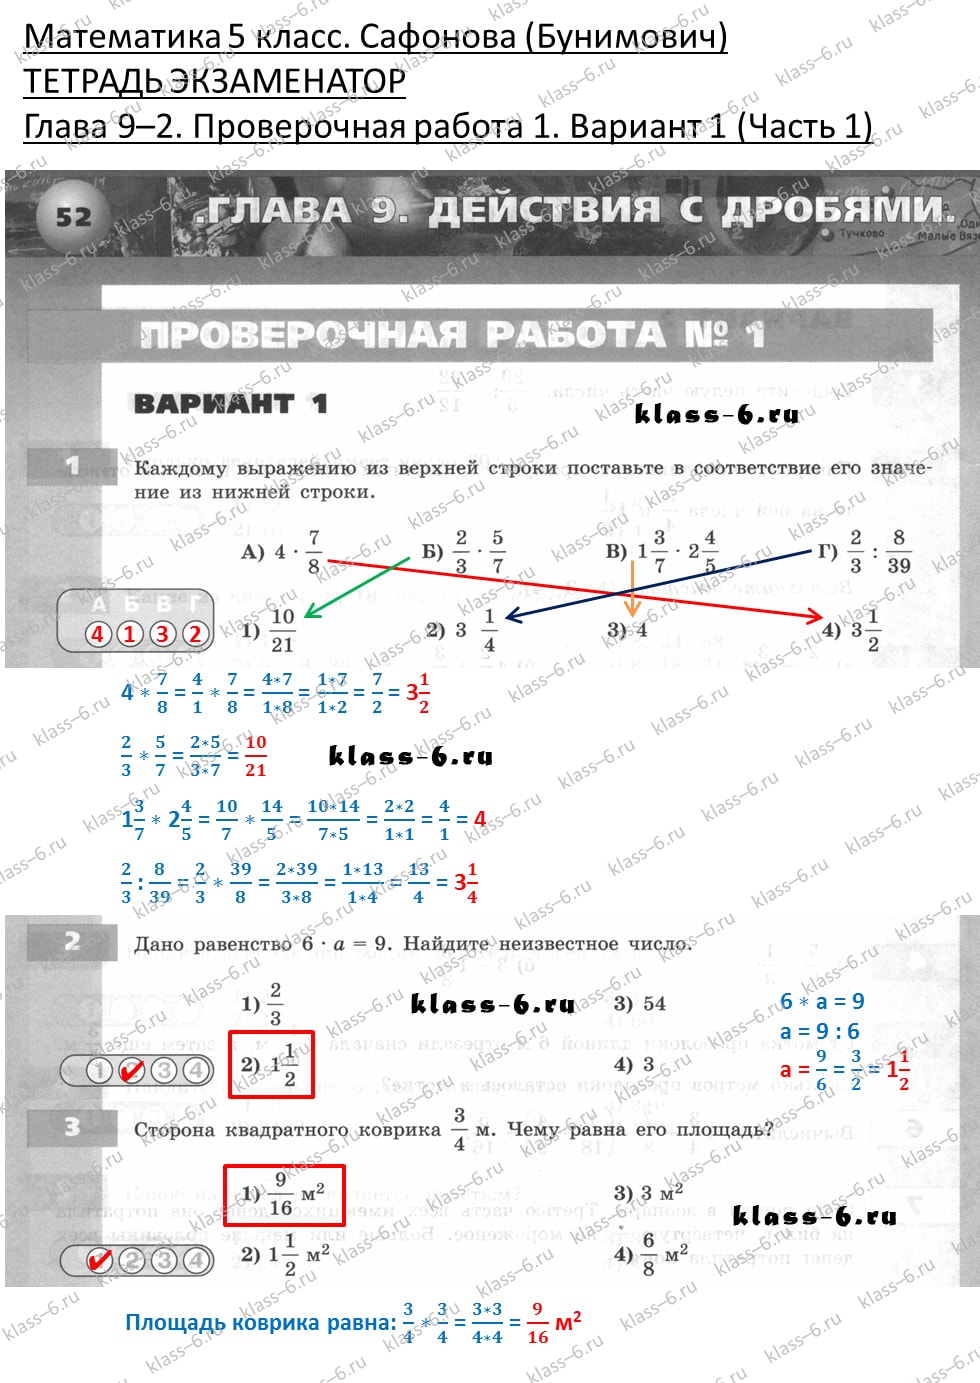 решебник и гдз по математике тетрадь экзаменатор Сафонова, Бунимович 5 класс глава 9 (2) контрольная работа 1 вариант 1 (1)